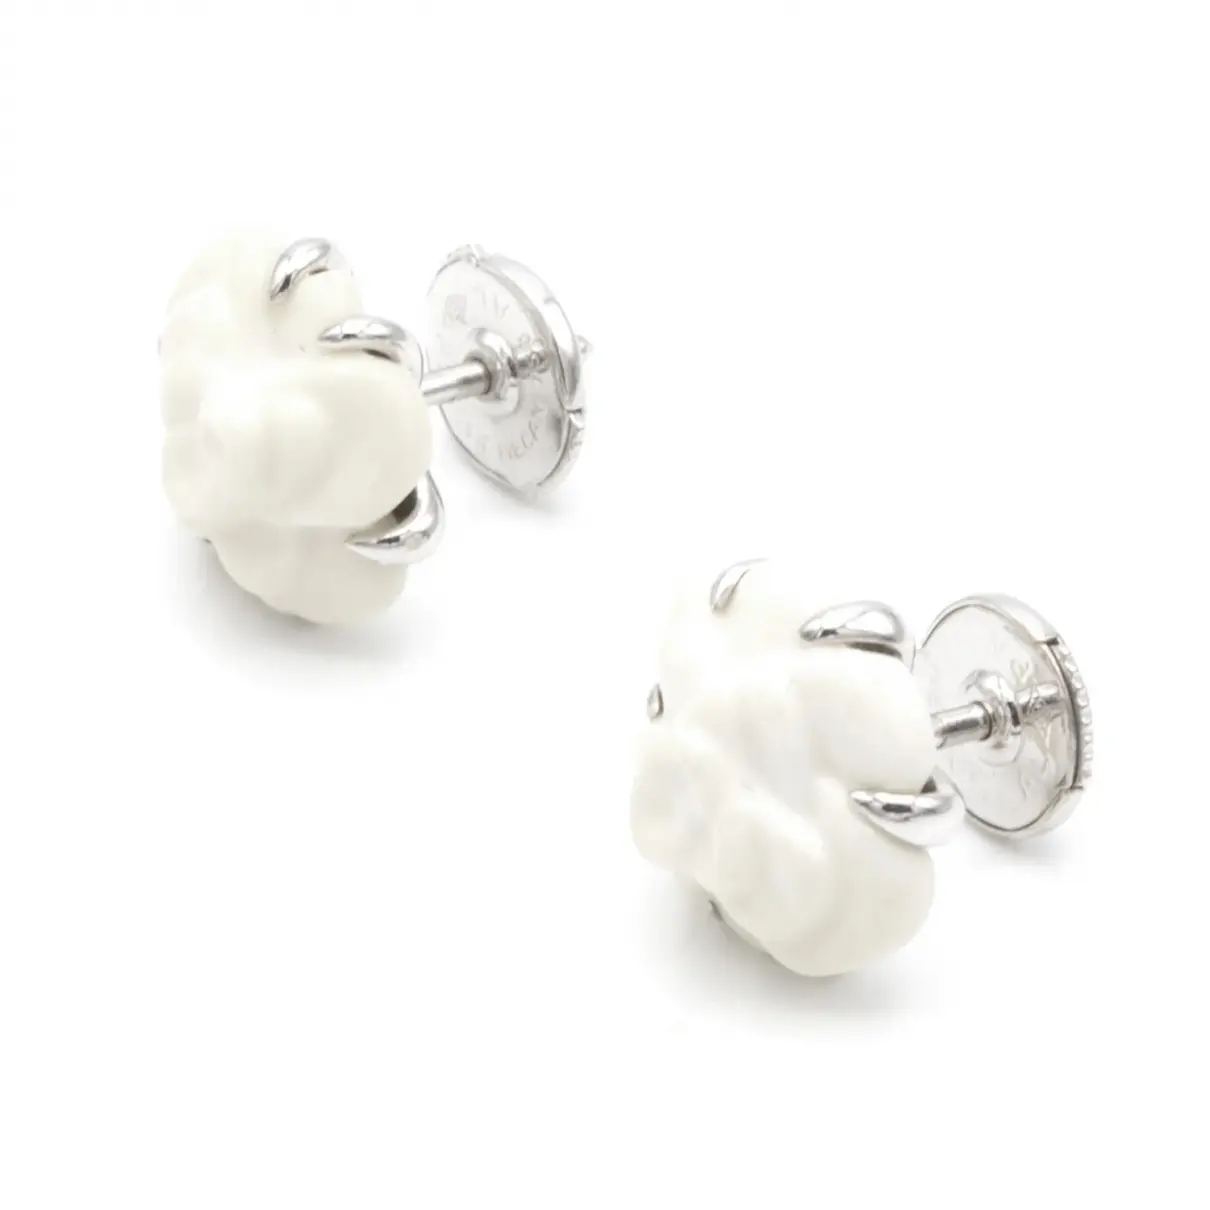 Buy Chanel Camélia white gold earrings online